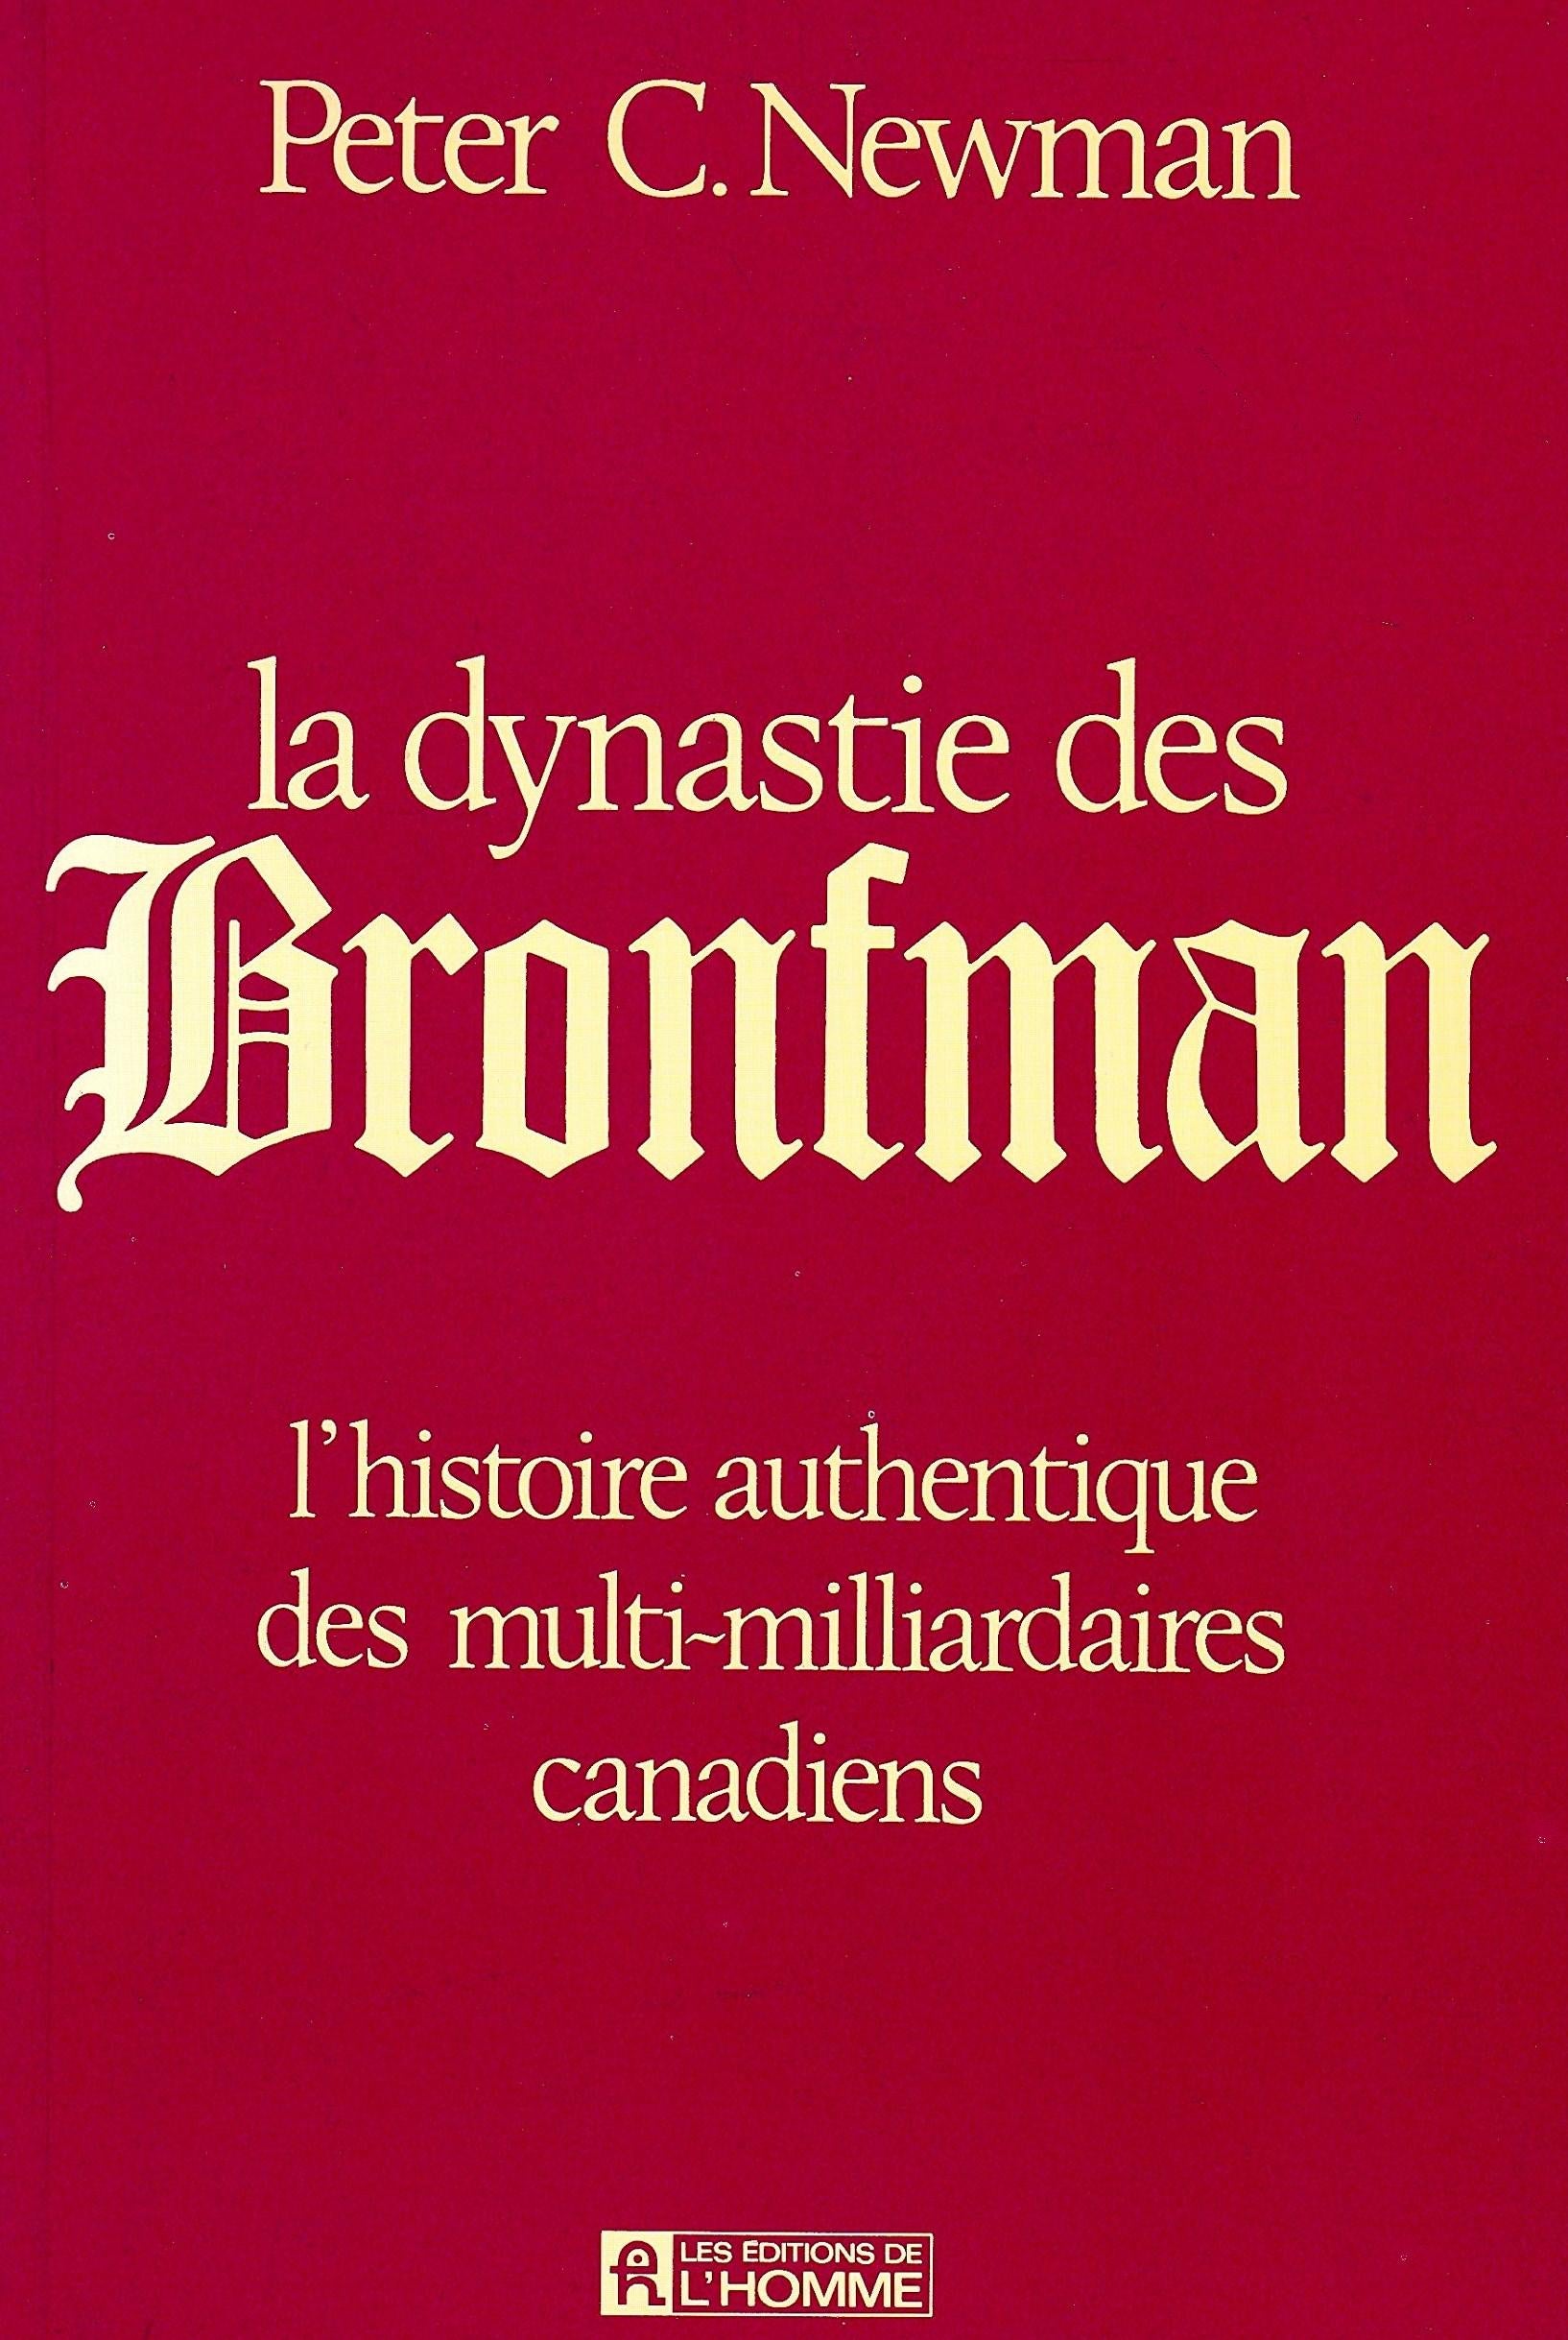 Livre ISBN 2761900154 La dynastie des Bronfman : L'histoire authentique des multi-milliardaires canadiens (Peter C. Newman)